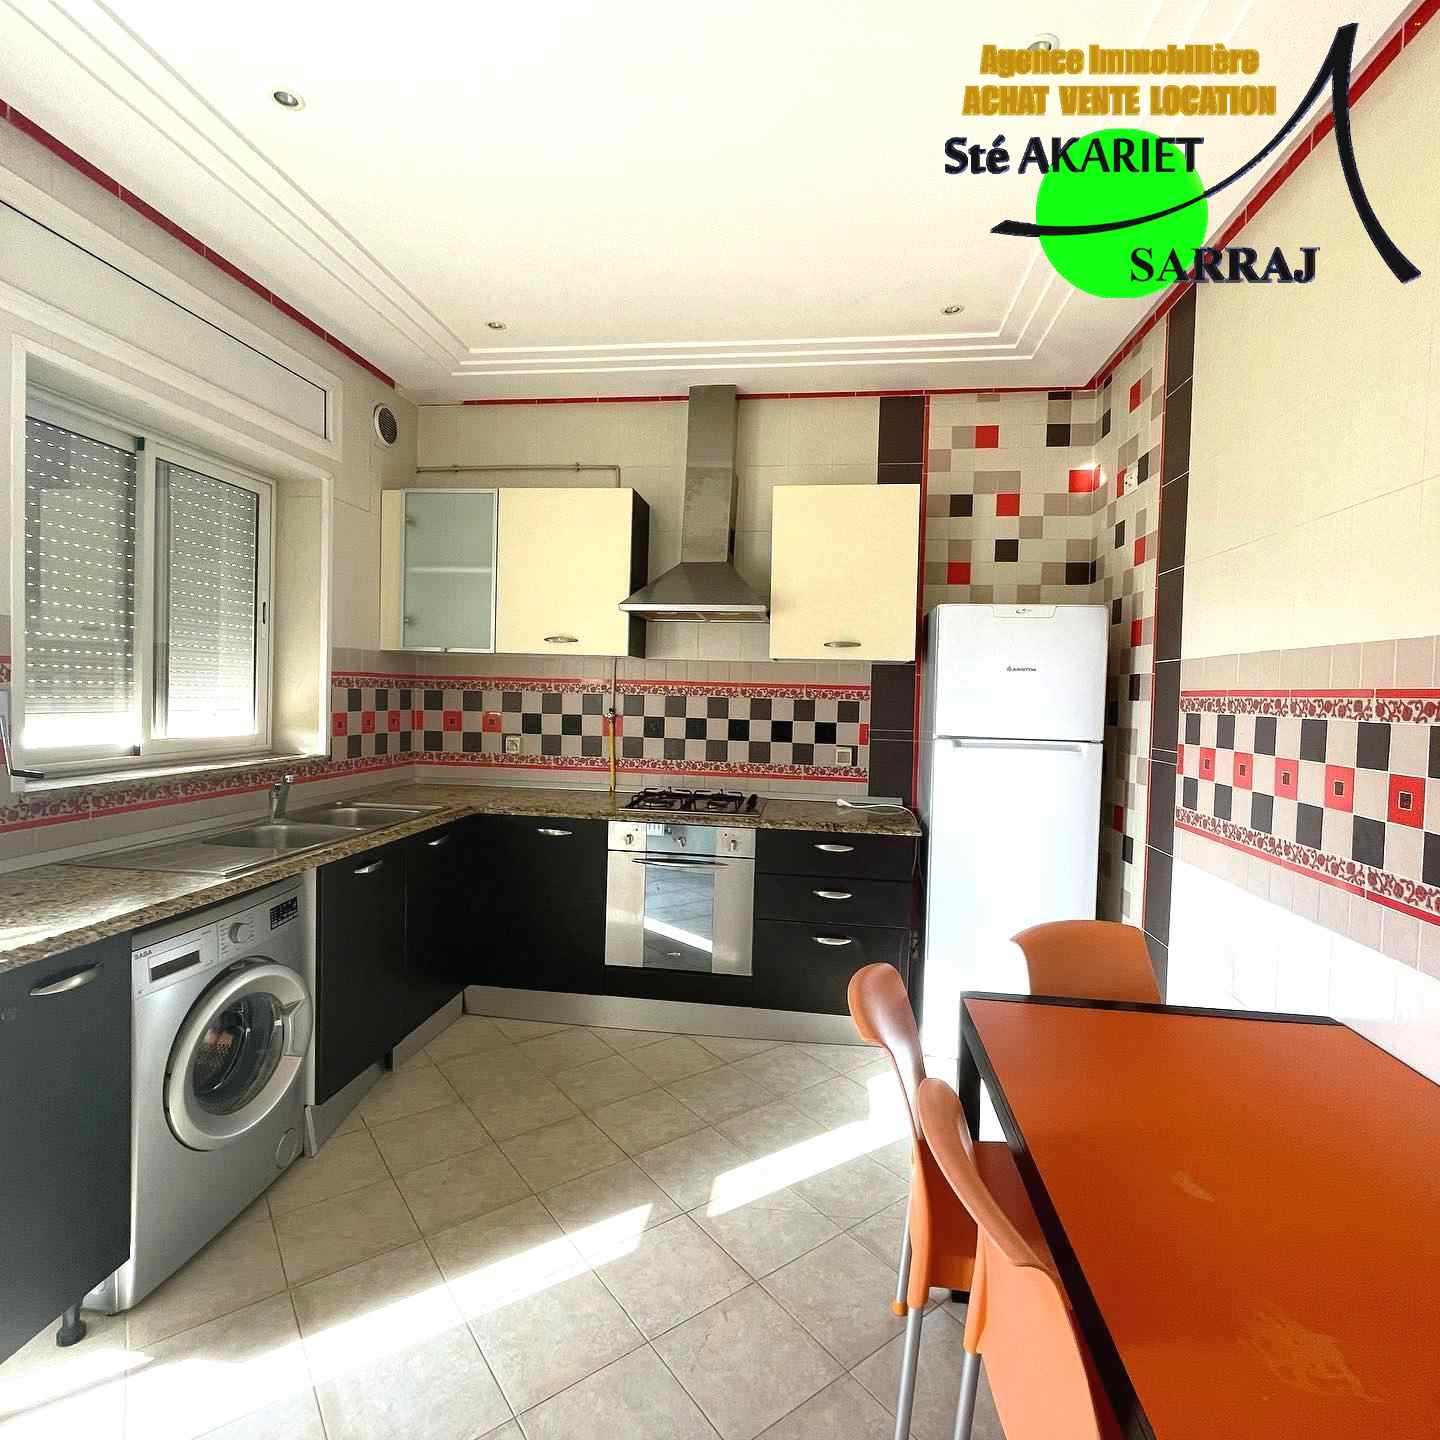 Sousse Jaouhara Sousse Khezama Vente Appart. 3 pices Lumineux appartement s2 avec grand terrasse khzema